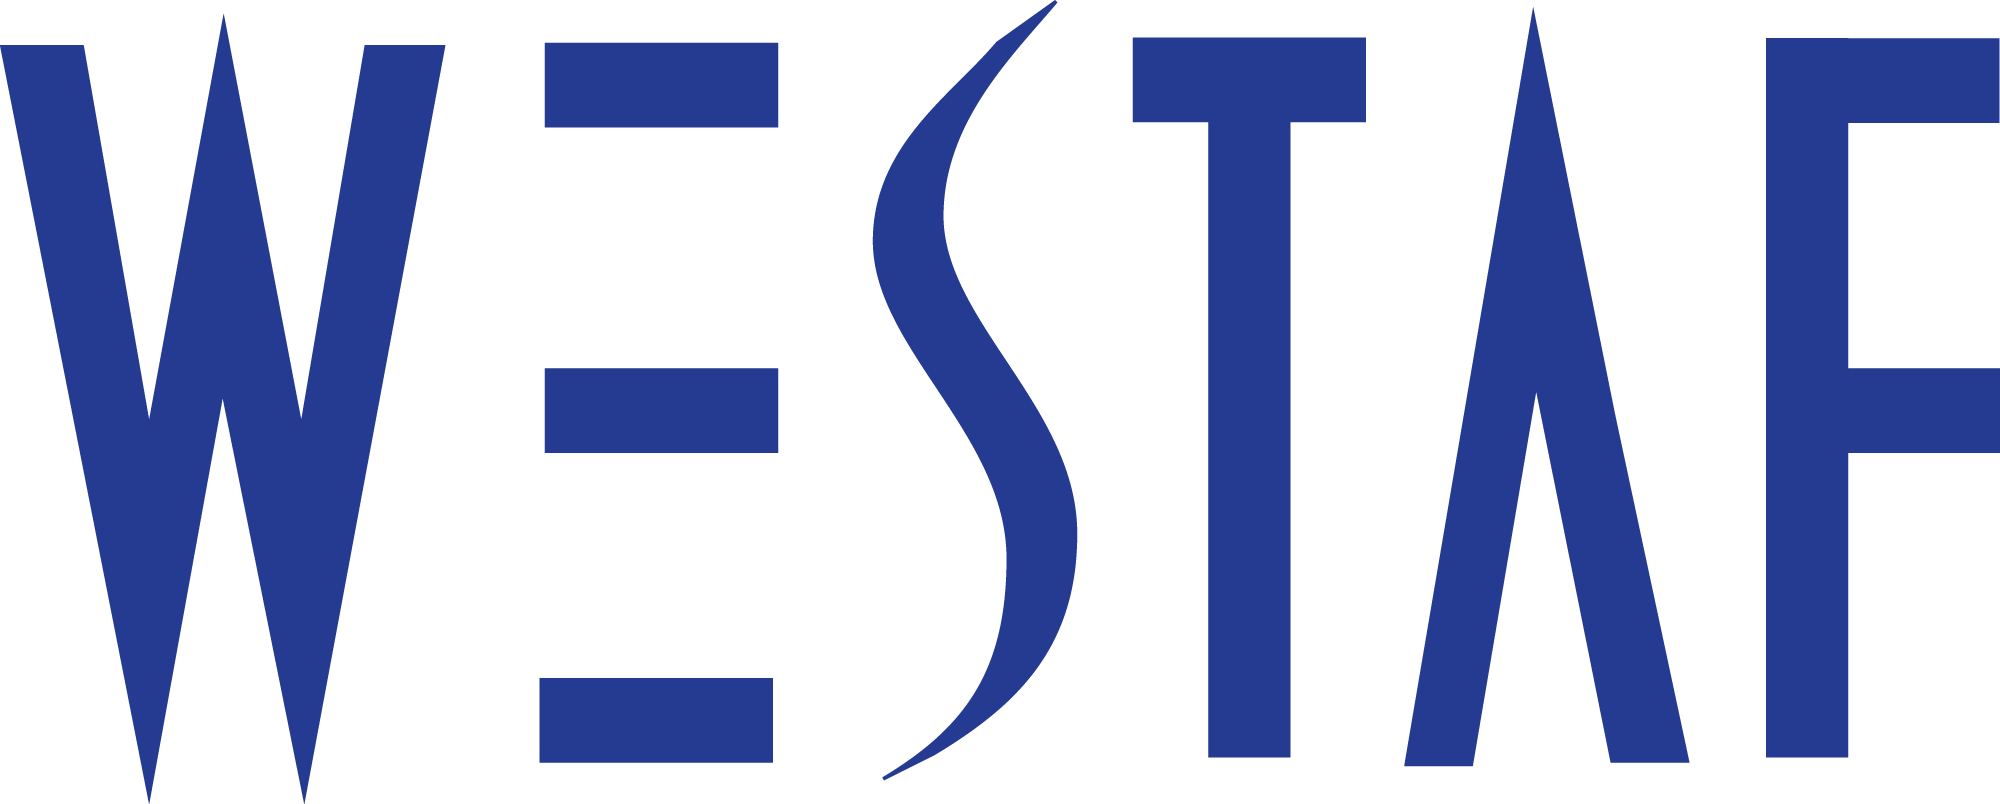 The United States Regional Arts Organizations Westaf